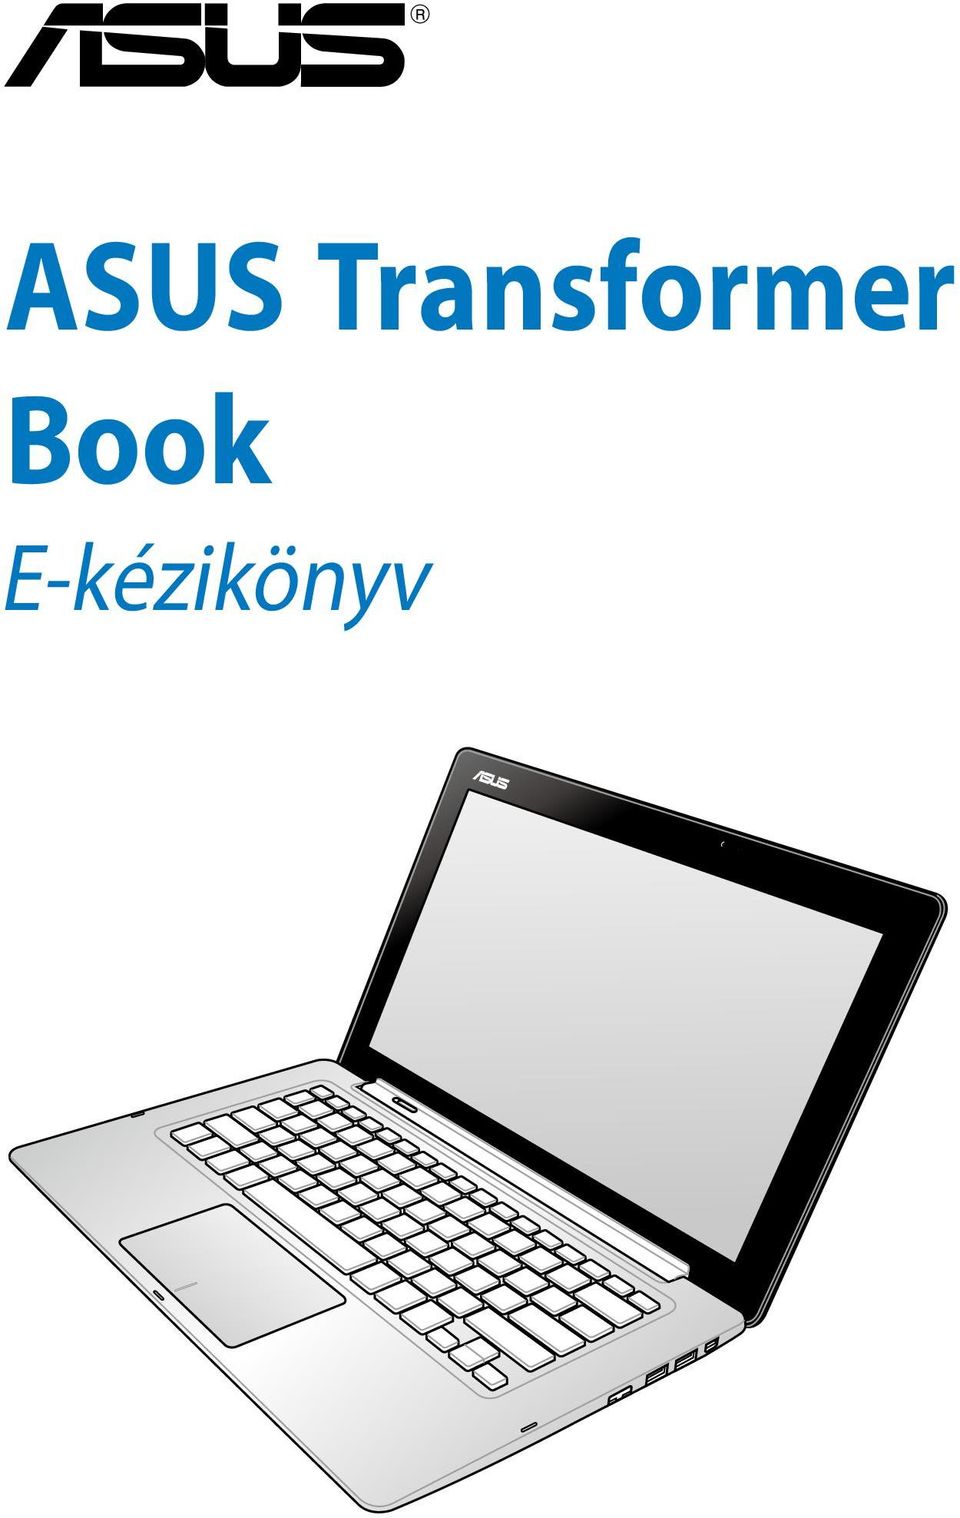 ASUS Transformer Book. E-kézikönyv - PDF Ingyenes letöltés